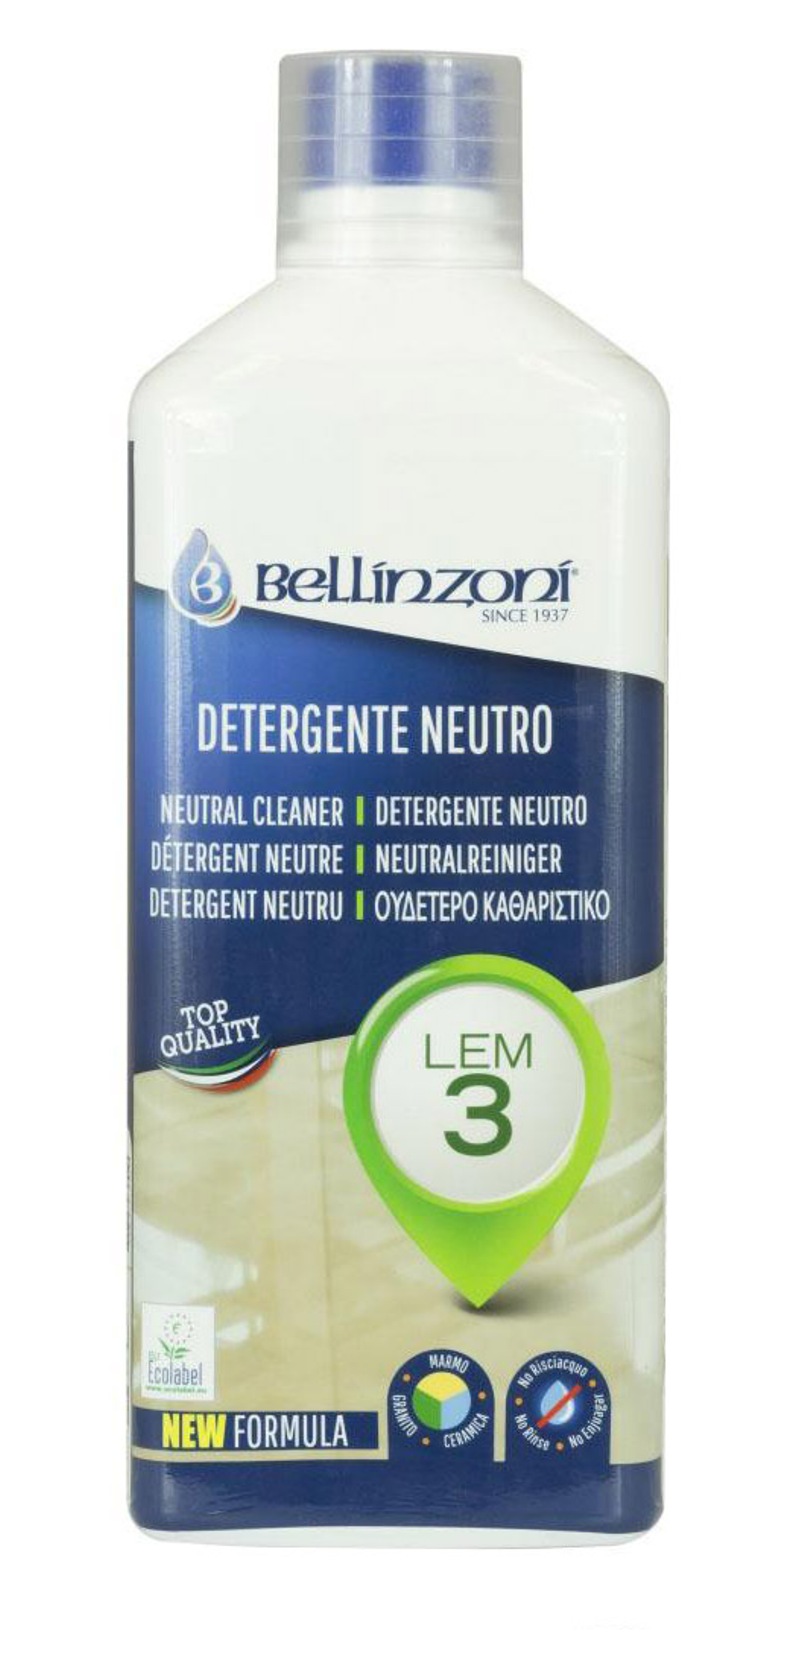 Bellinzoni - Lem 3 / 1 liter